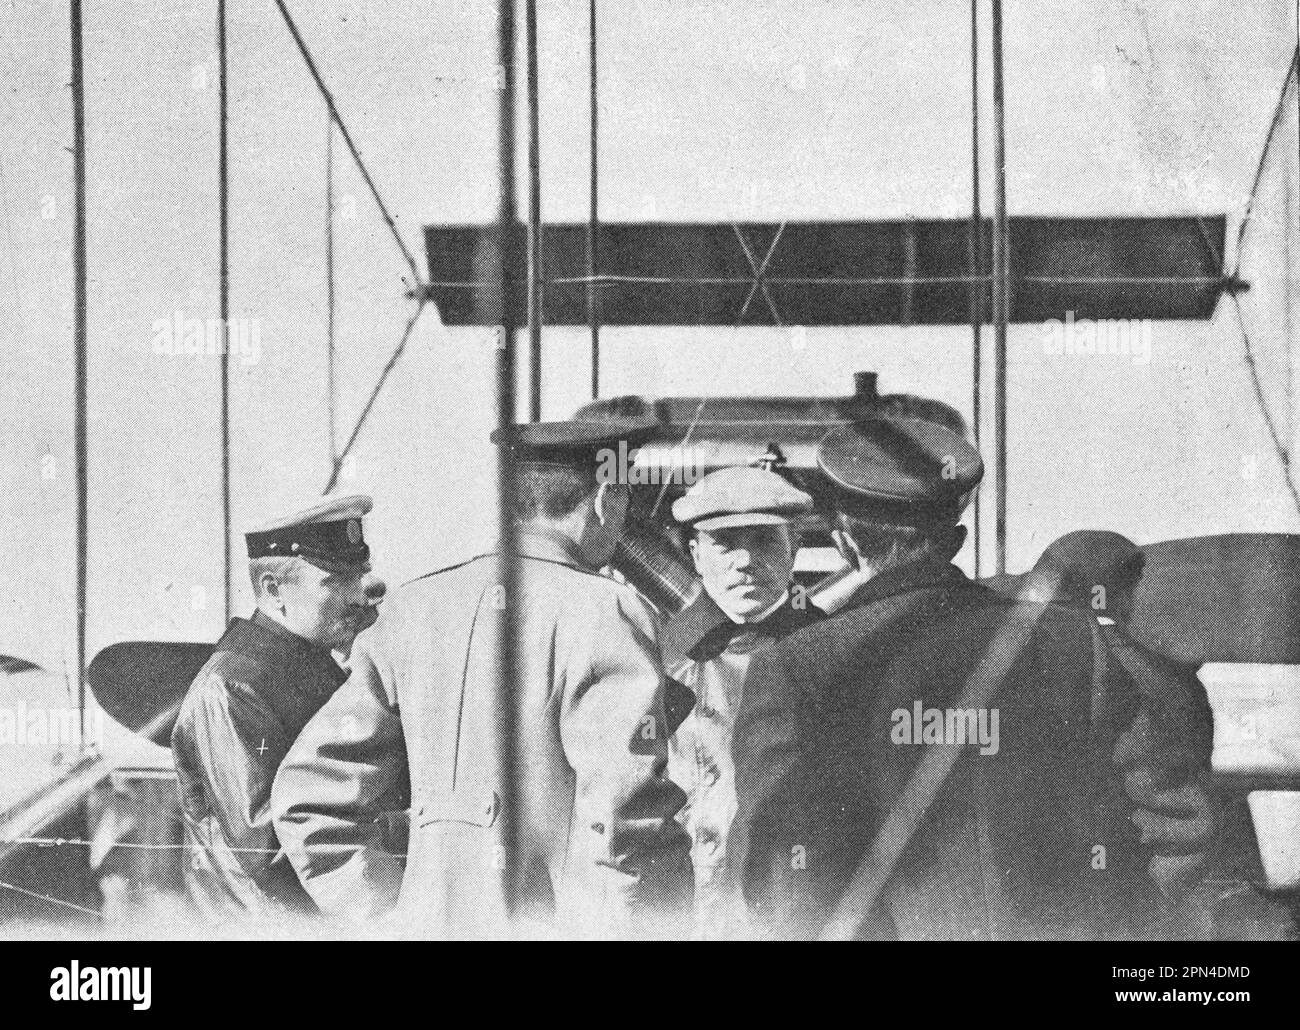 Le premier aviateur militaire russe Lev Macievich (Matsievich) avec des amis. Photo de 1910. Banque D'Images